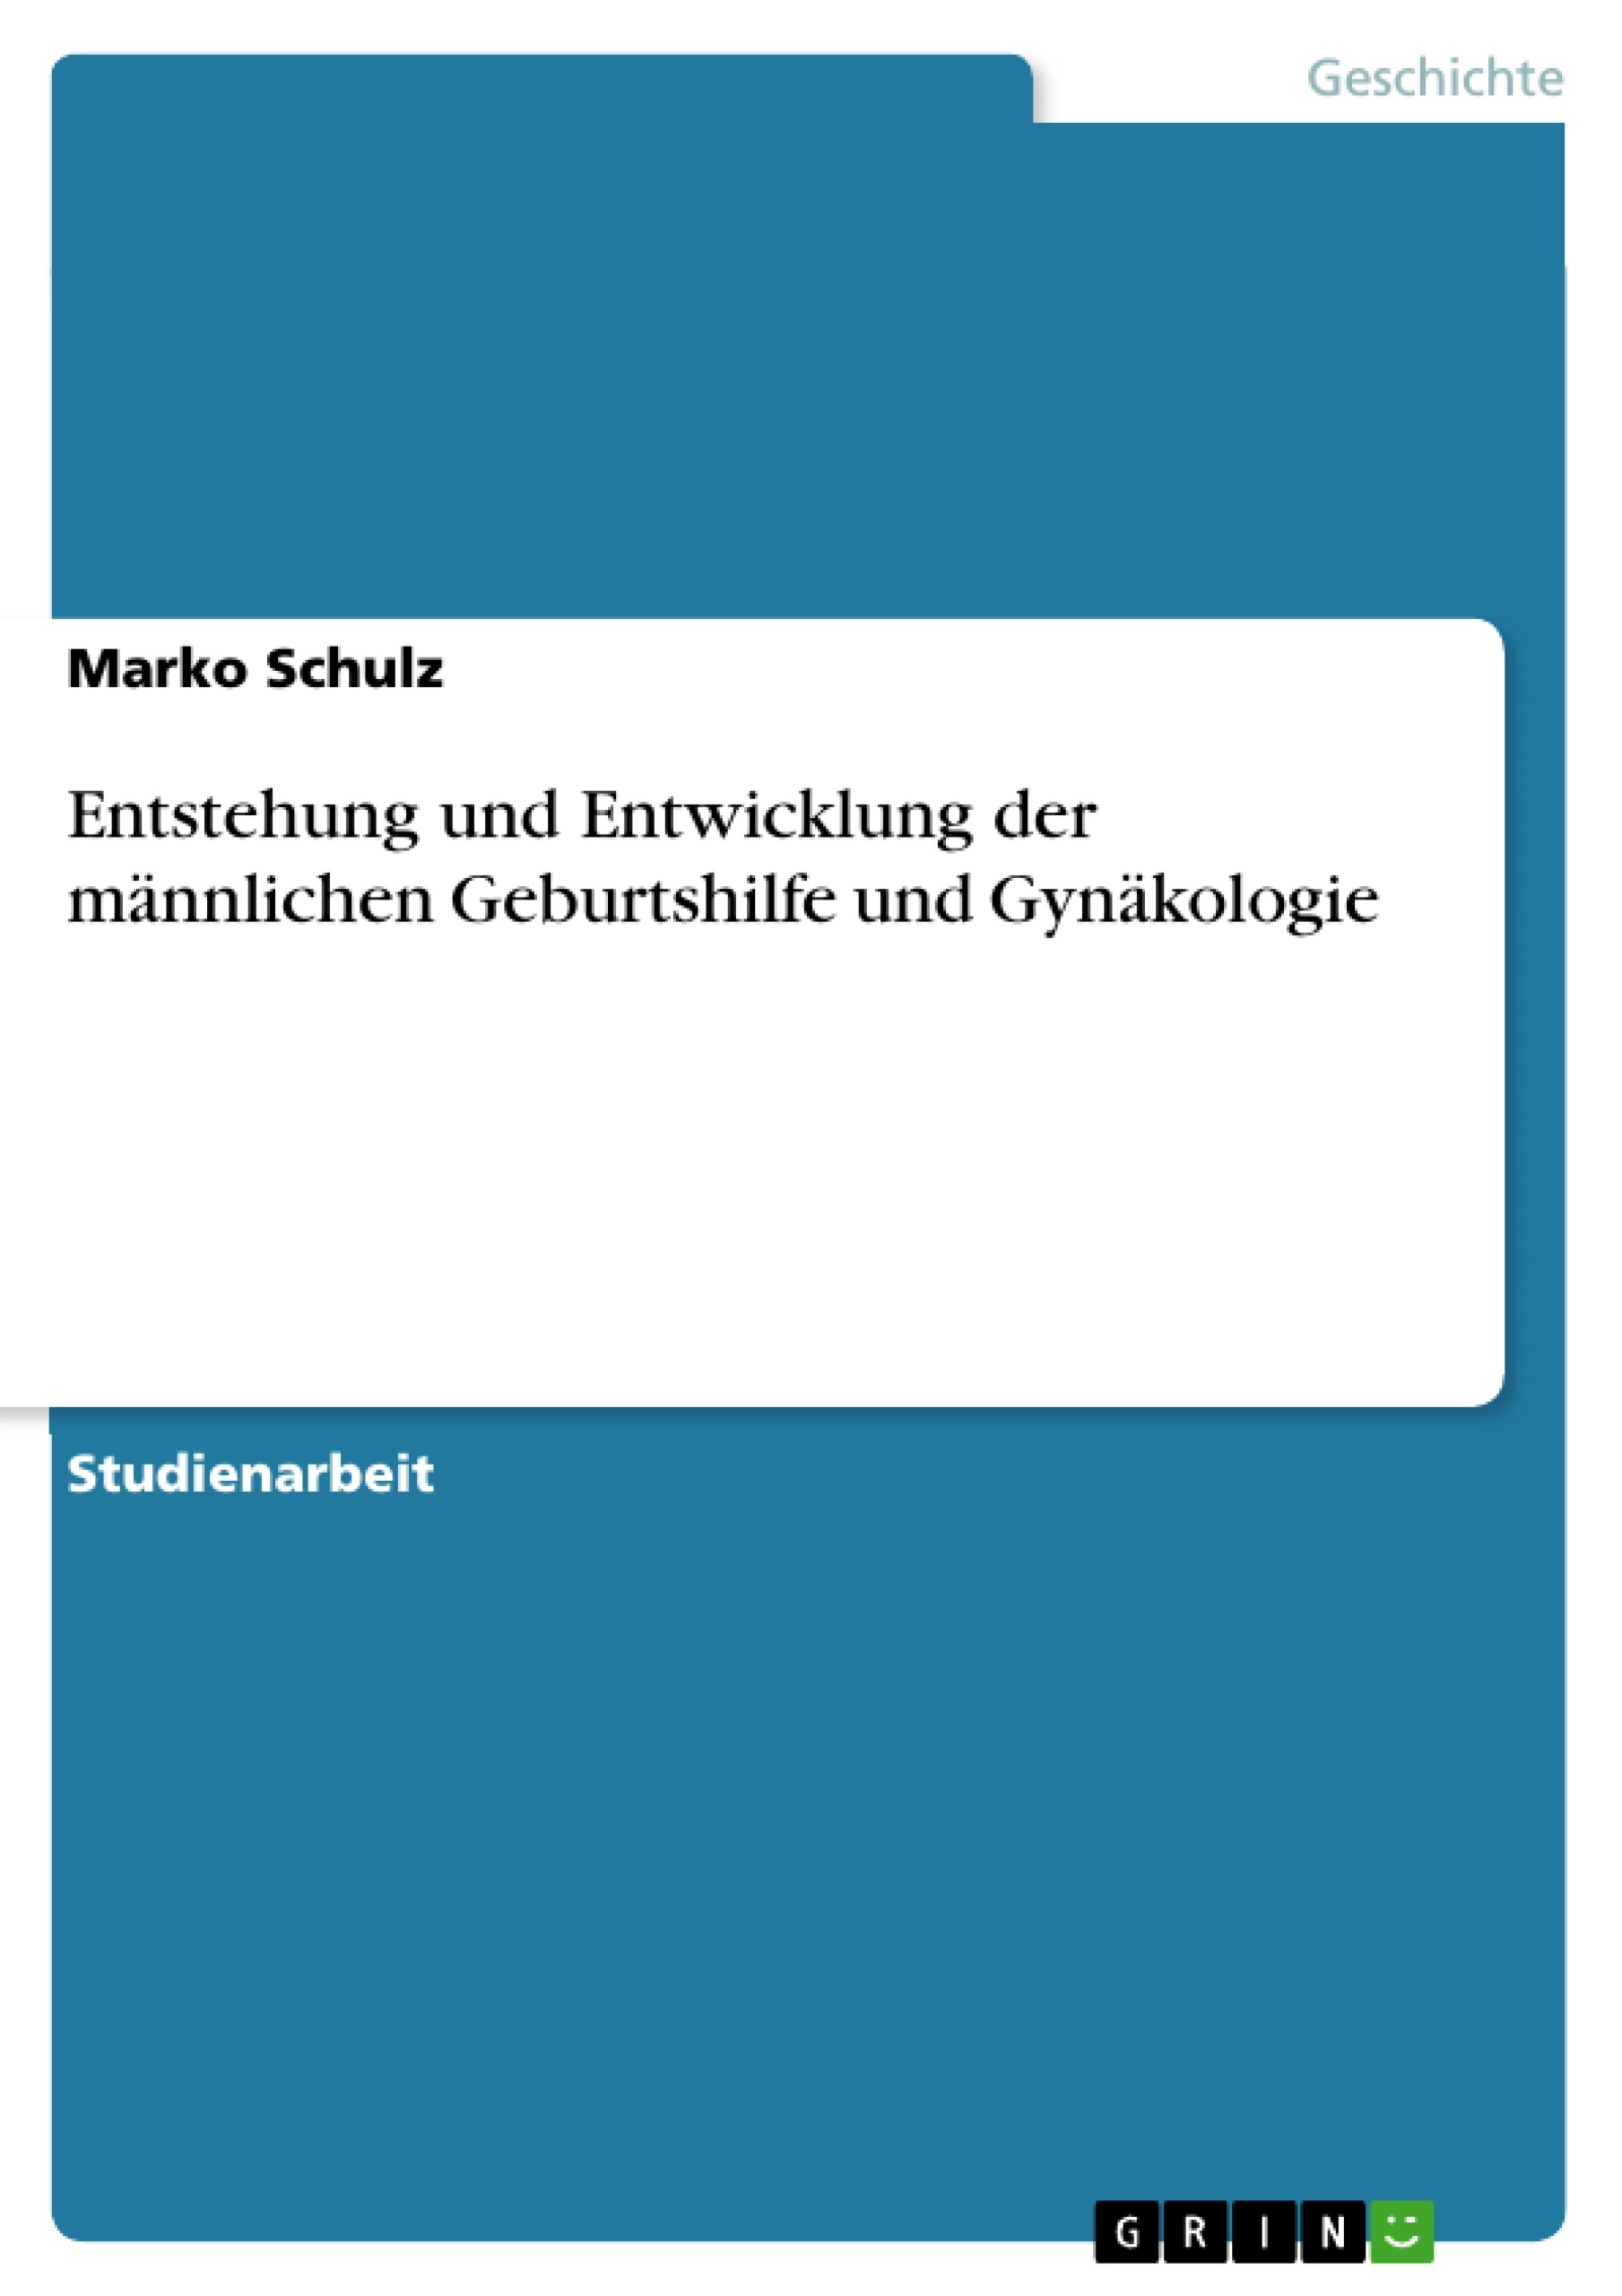 Title: Entstehung und Entwicklung der männlichen Geburtshilfe und Gynäkologie